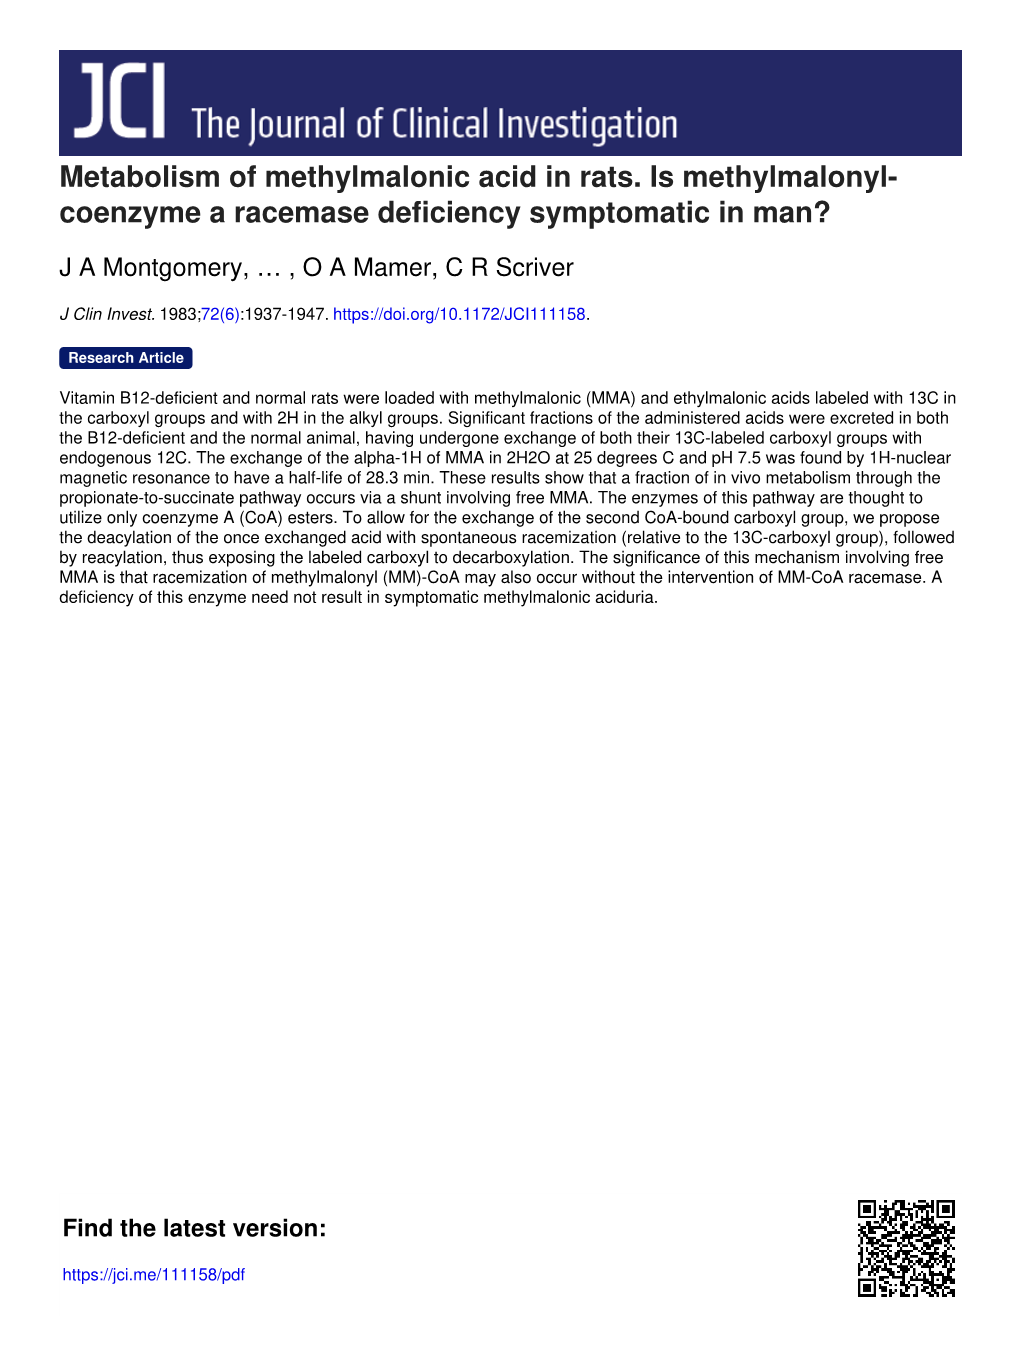 Metabolism of Methylmalonic Acid in Rats. Is Methylmalonyl- Coenzyme a Racemase Deficiency Symptomatic in Man?